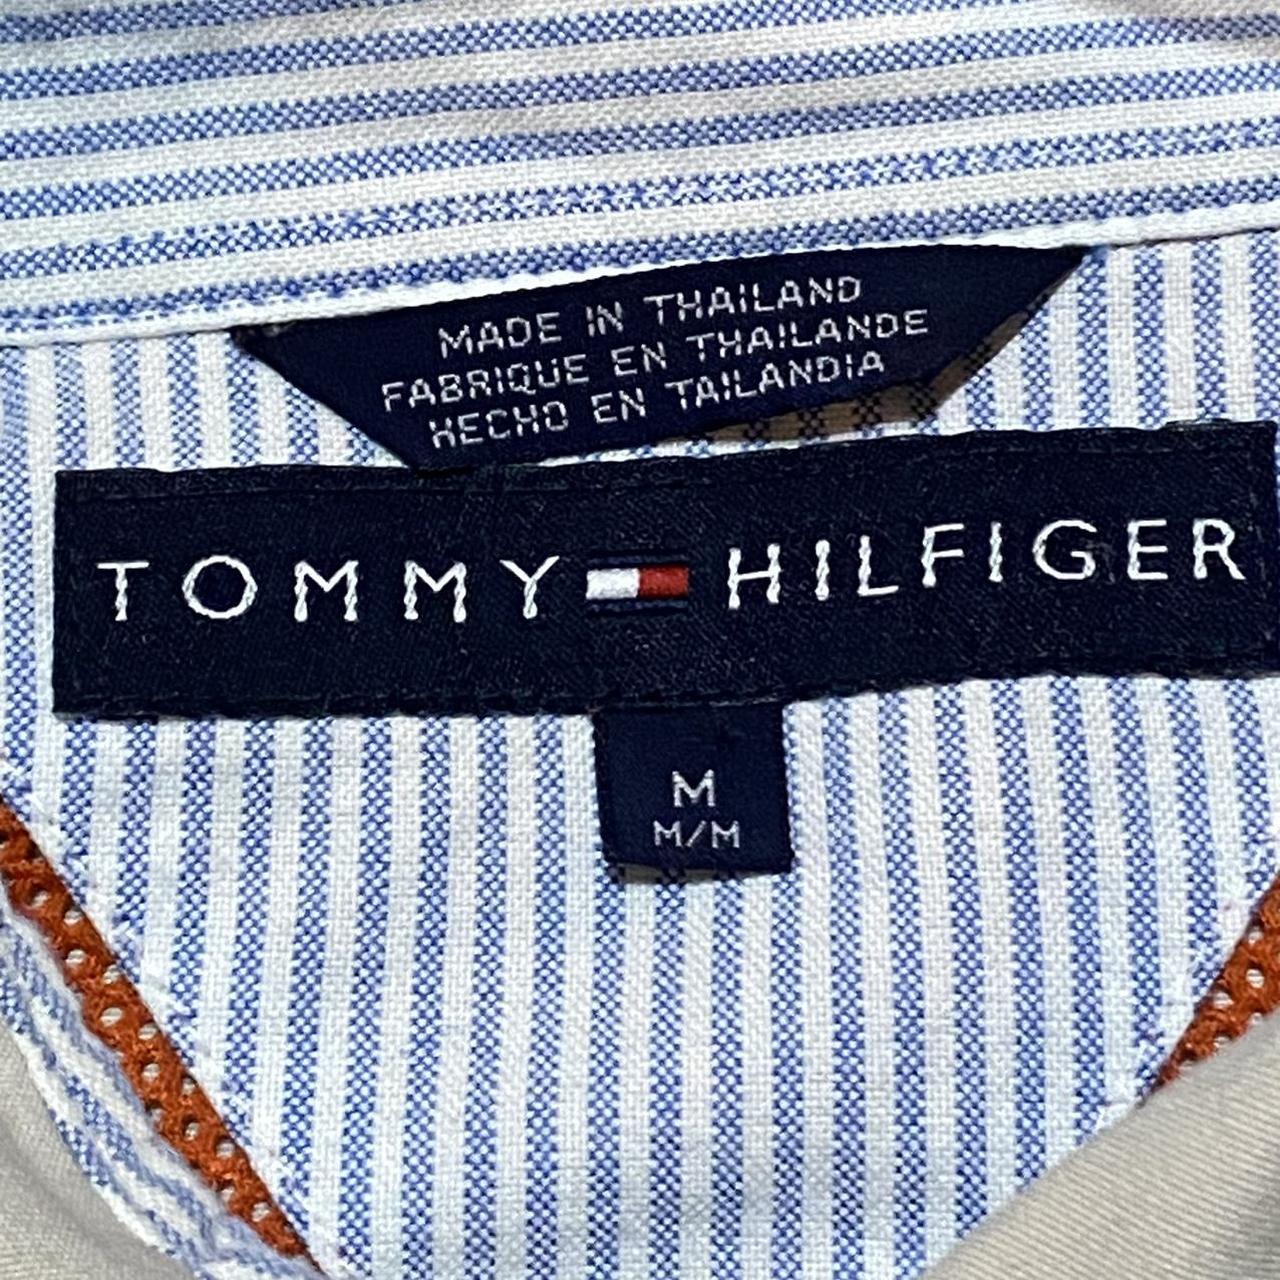 Vintage Tommy Hilfiger Harrington/bomber jacket size... - Depop